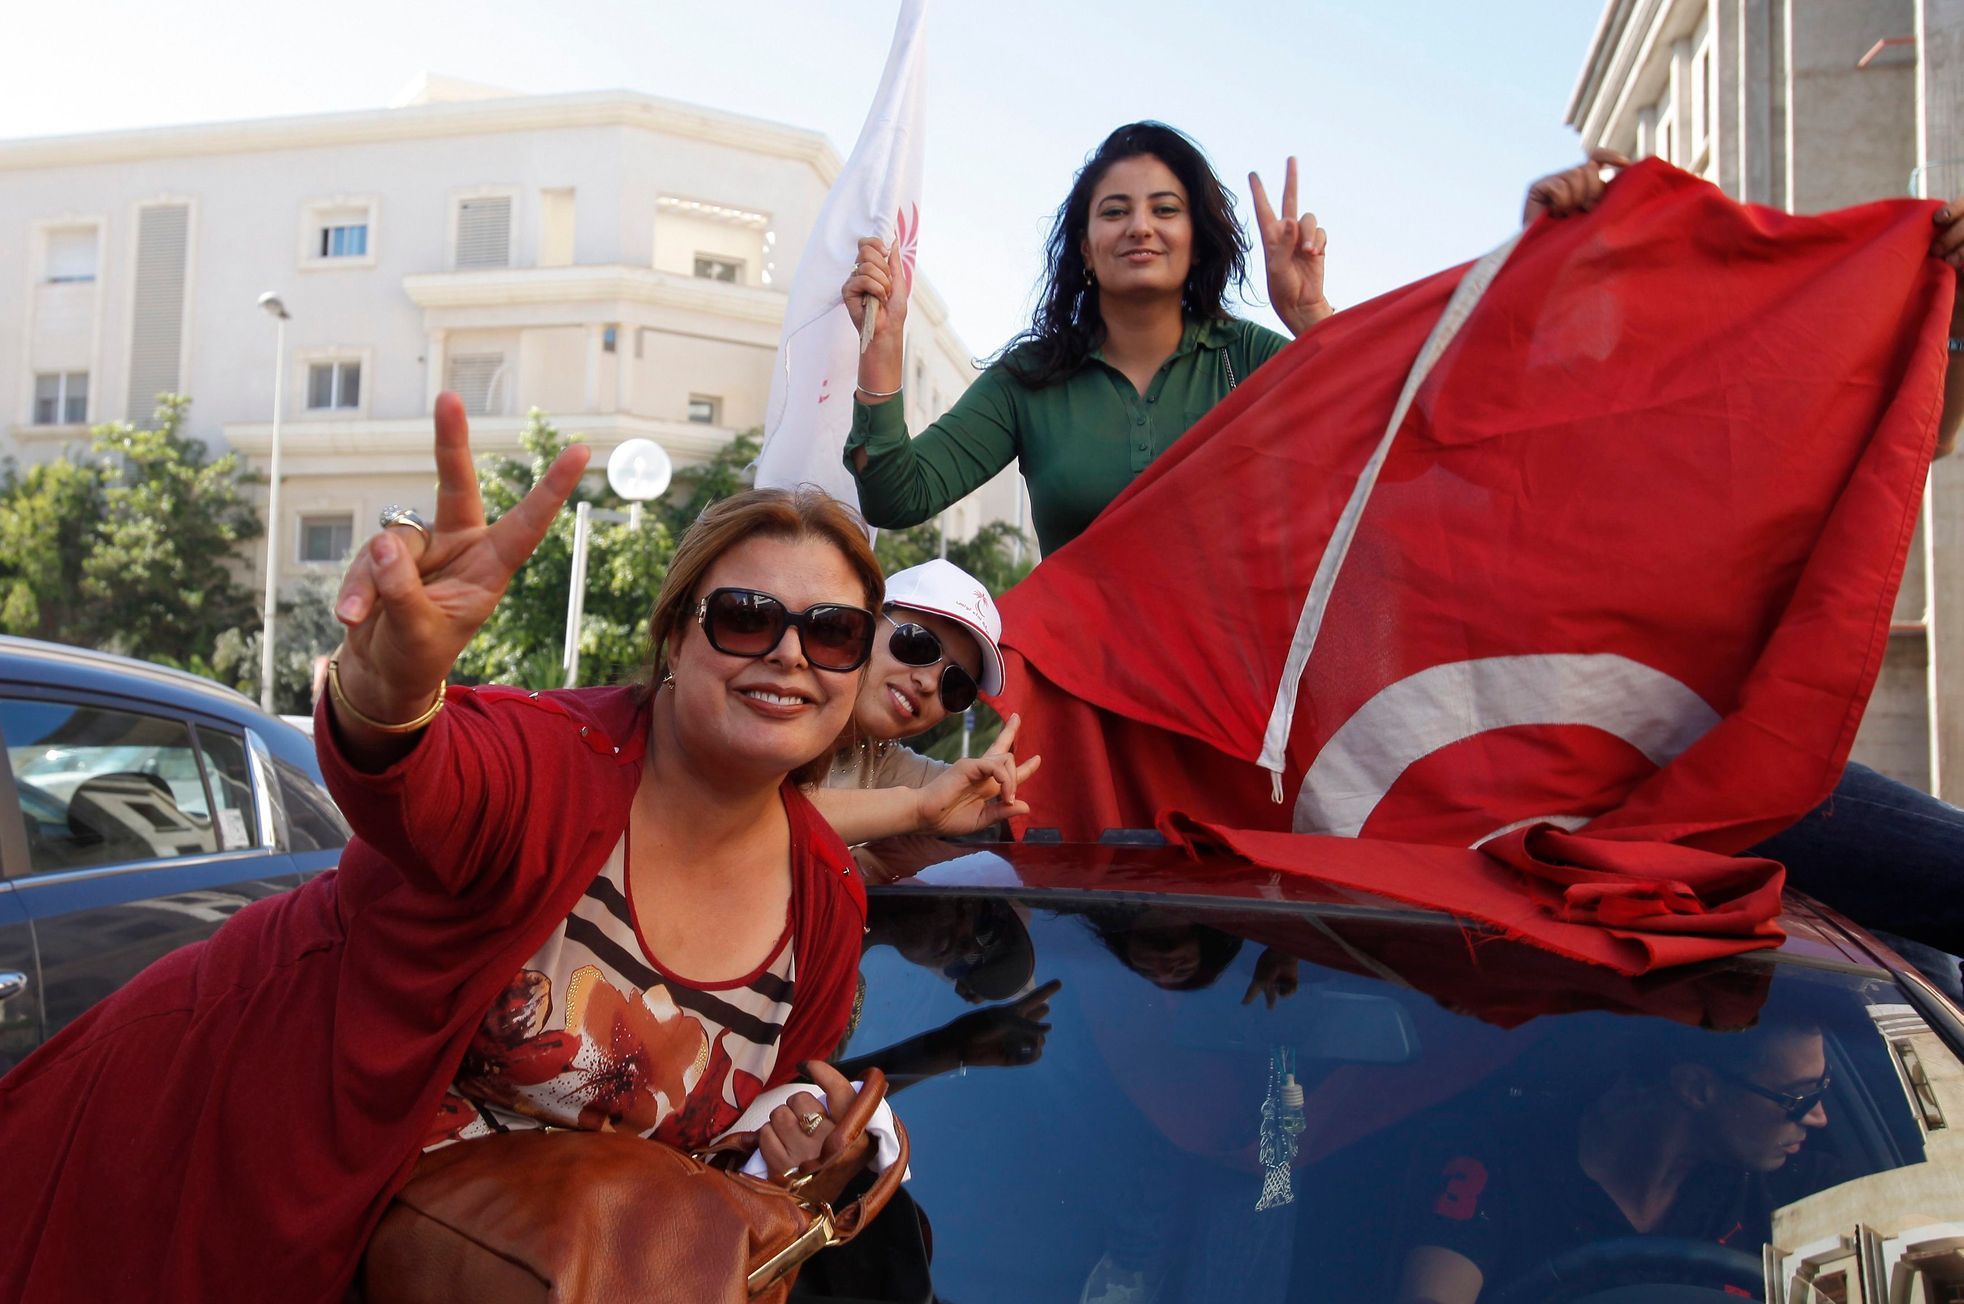 Tunisko - volby